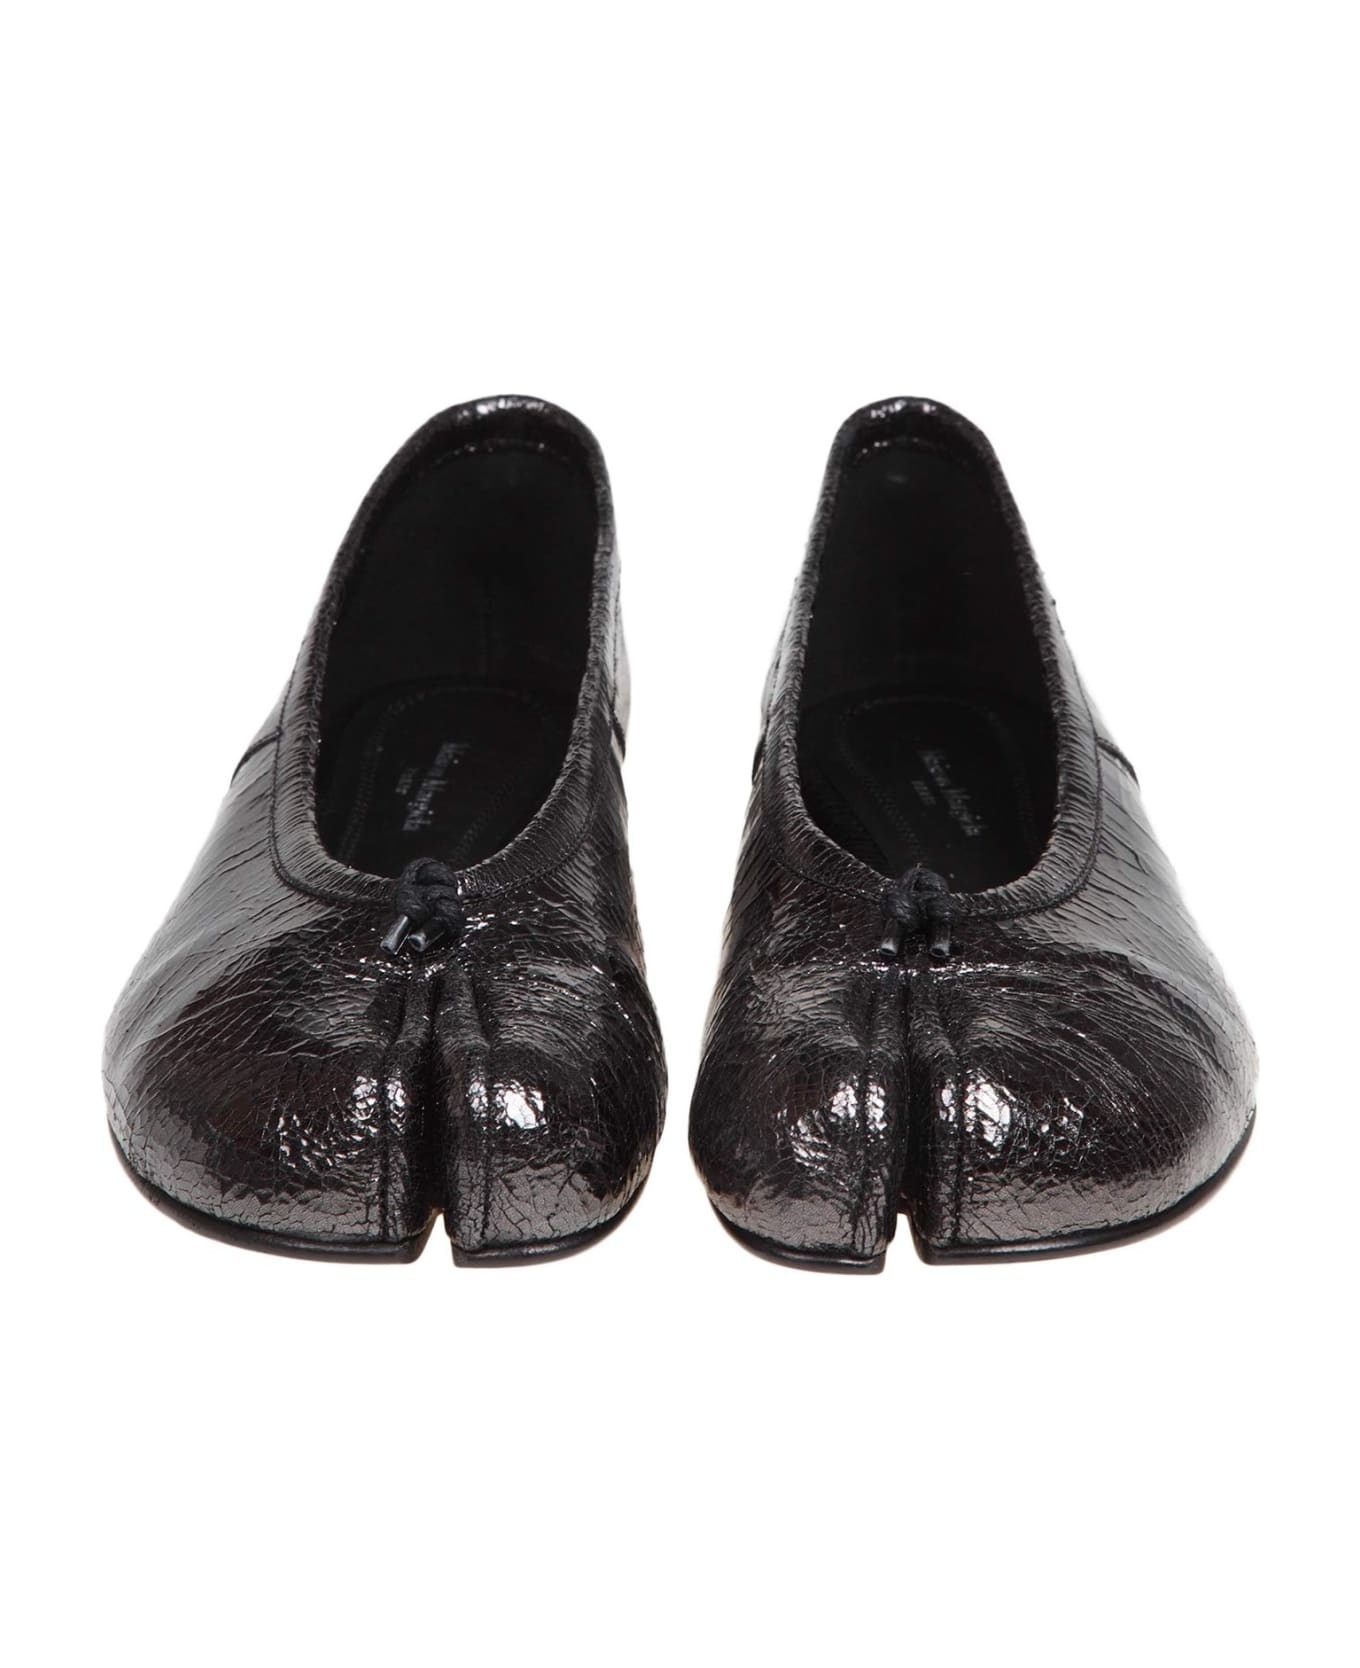 'ballet' Black Shiny Leather Ballet Flats - 3